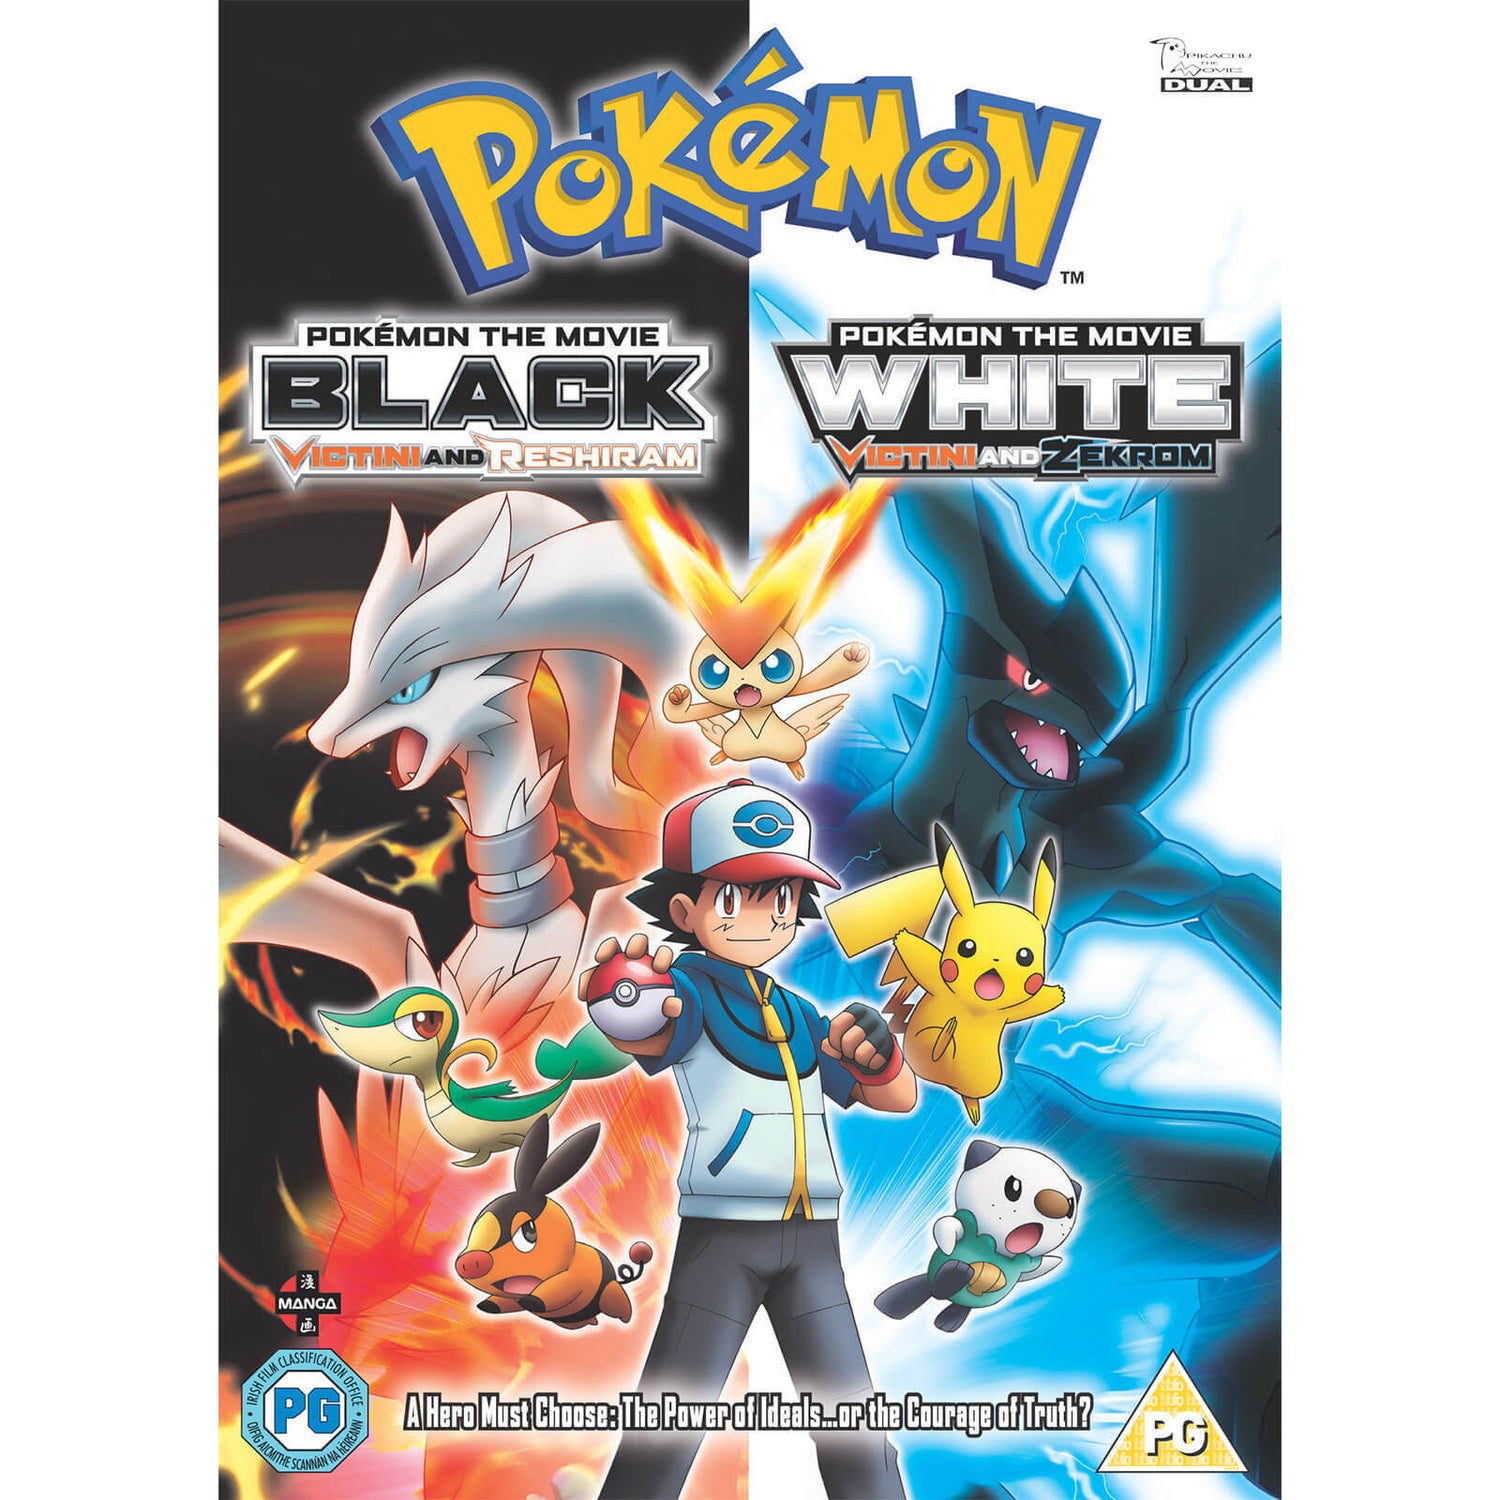 Pokémon Movie 14: Black & White - Victini and Zekrom/Victini and Reshiram